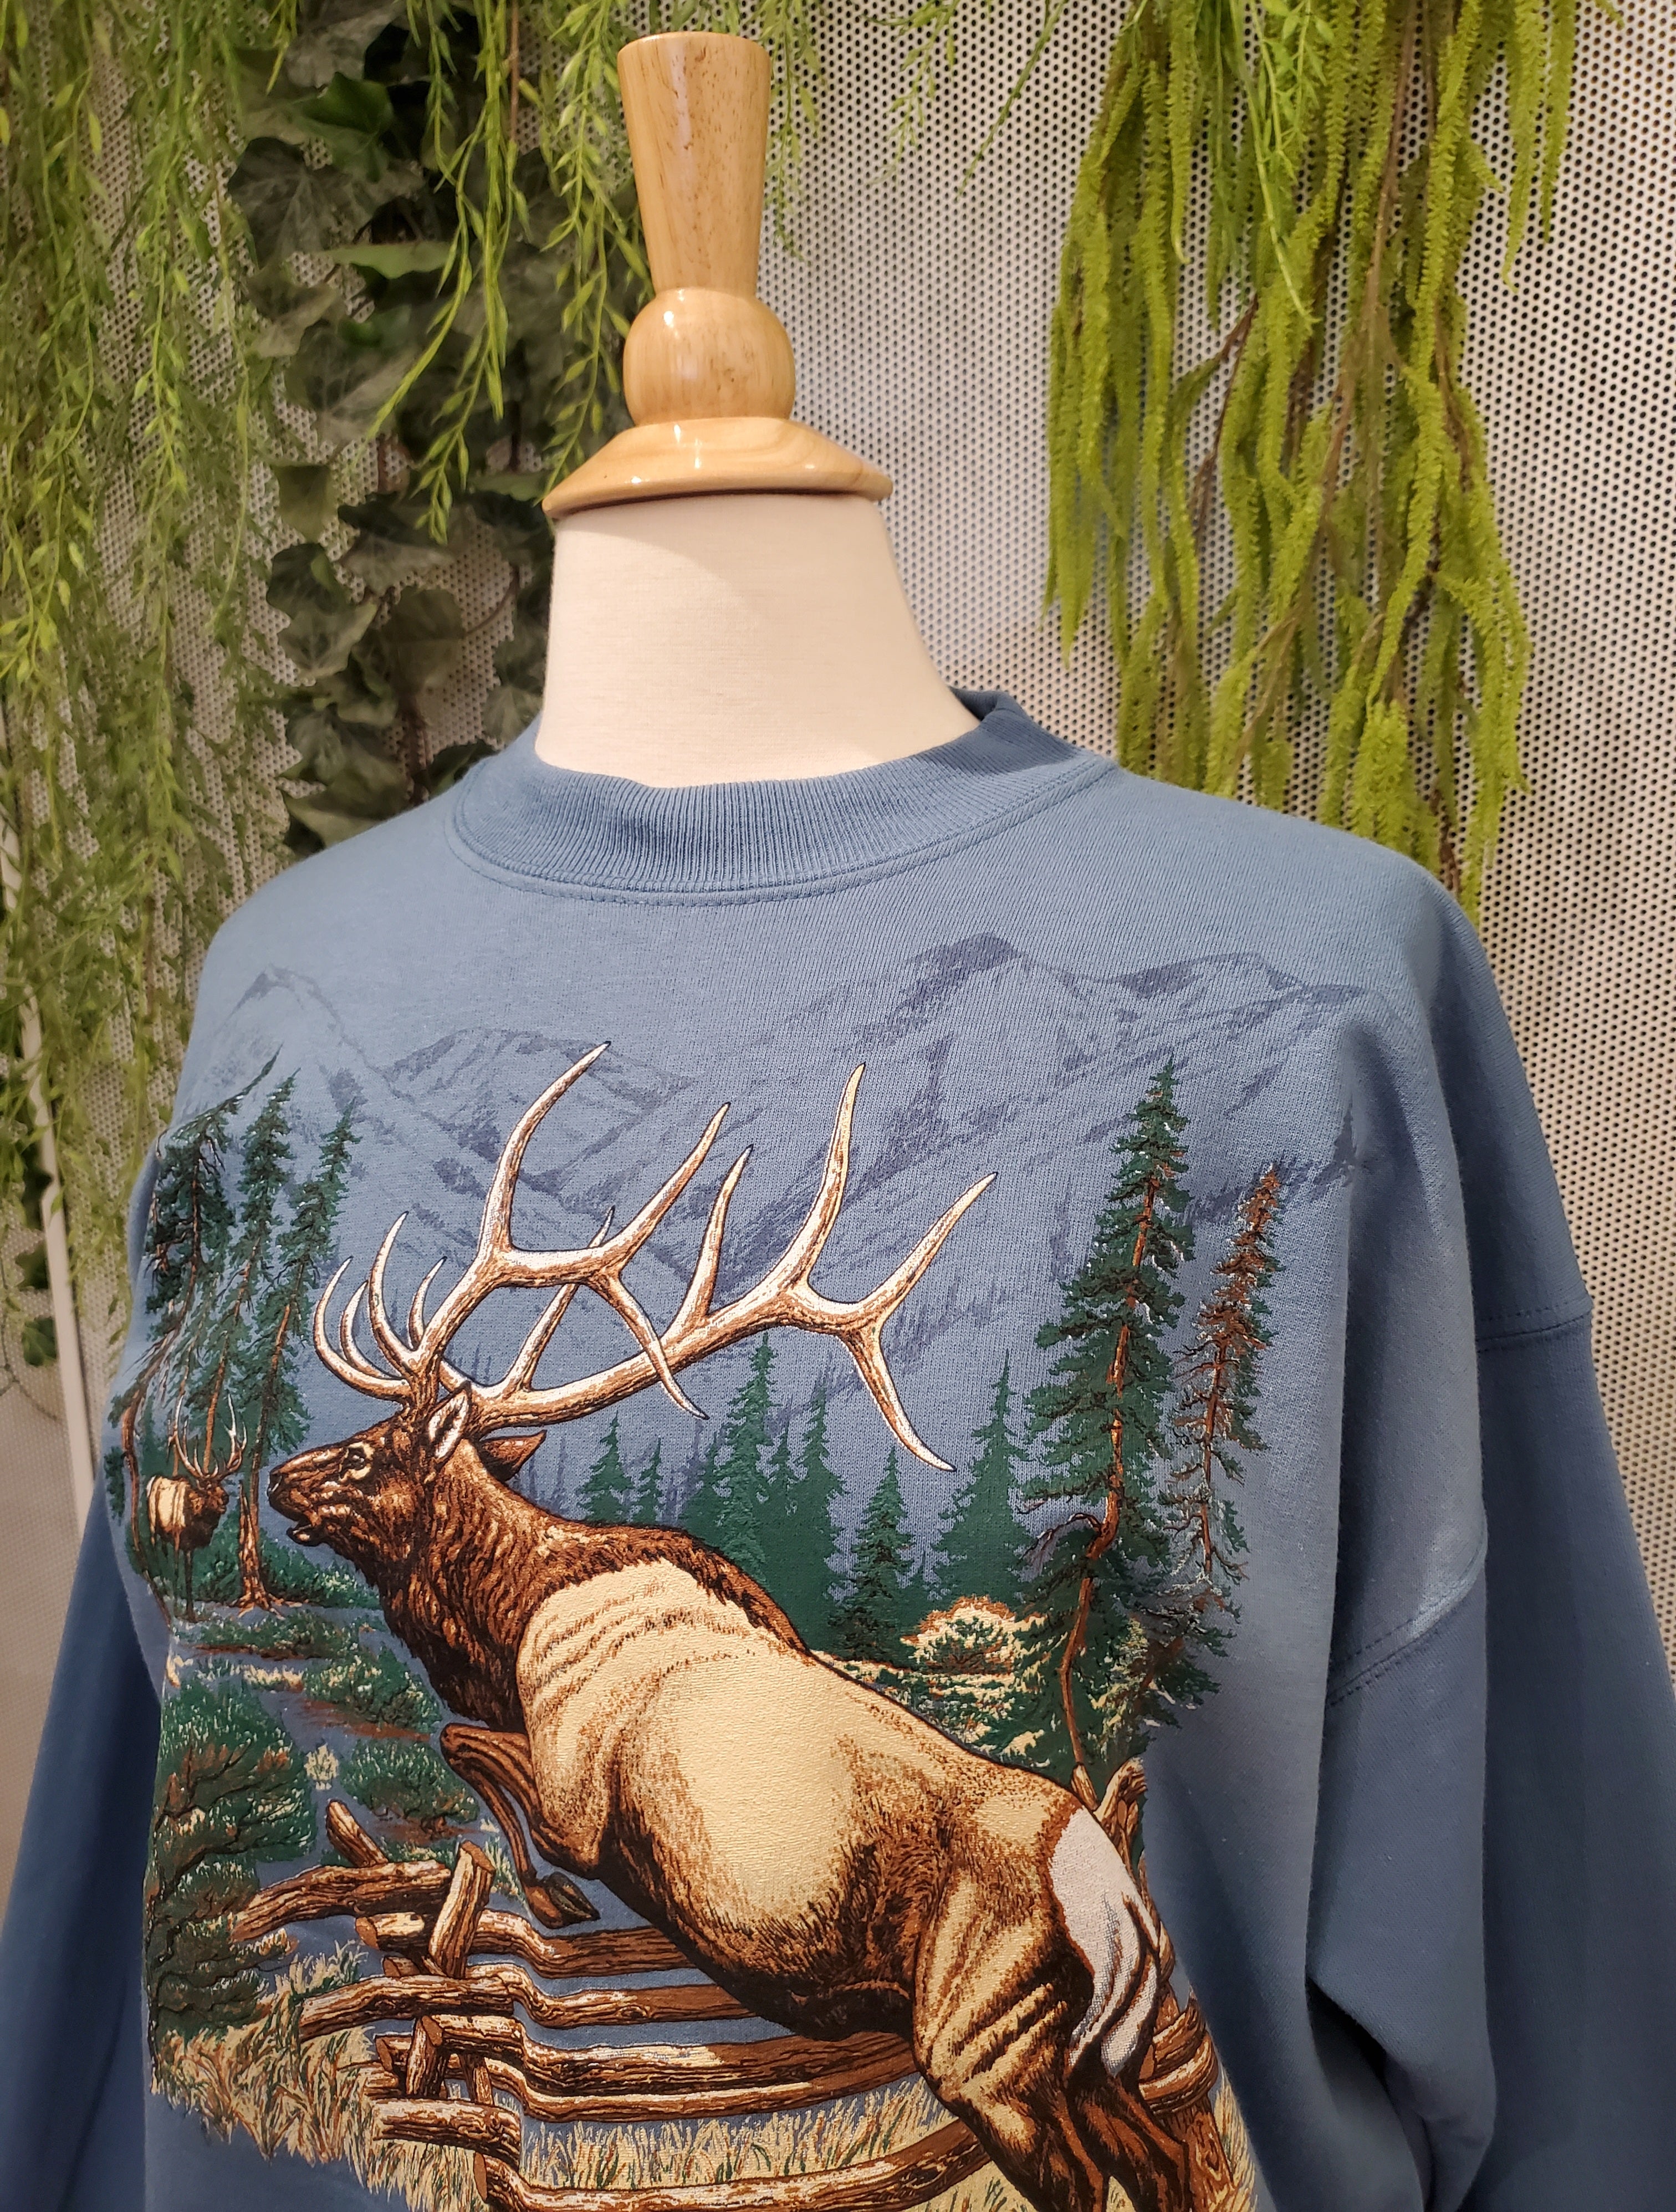 1997 Colorado Sweatshirt